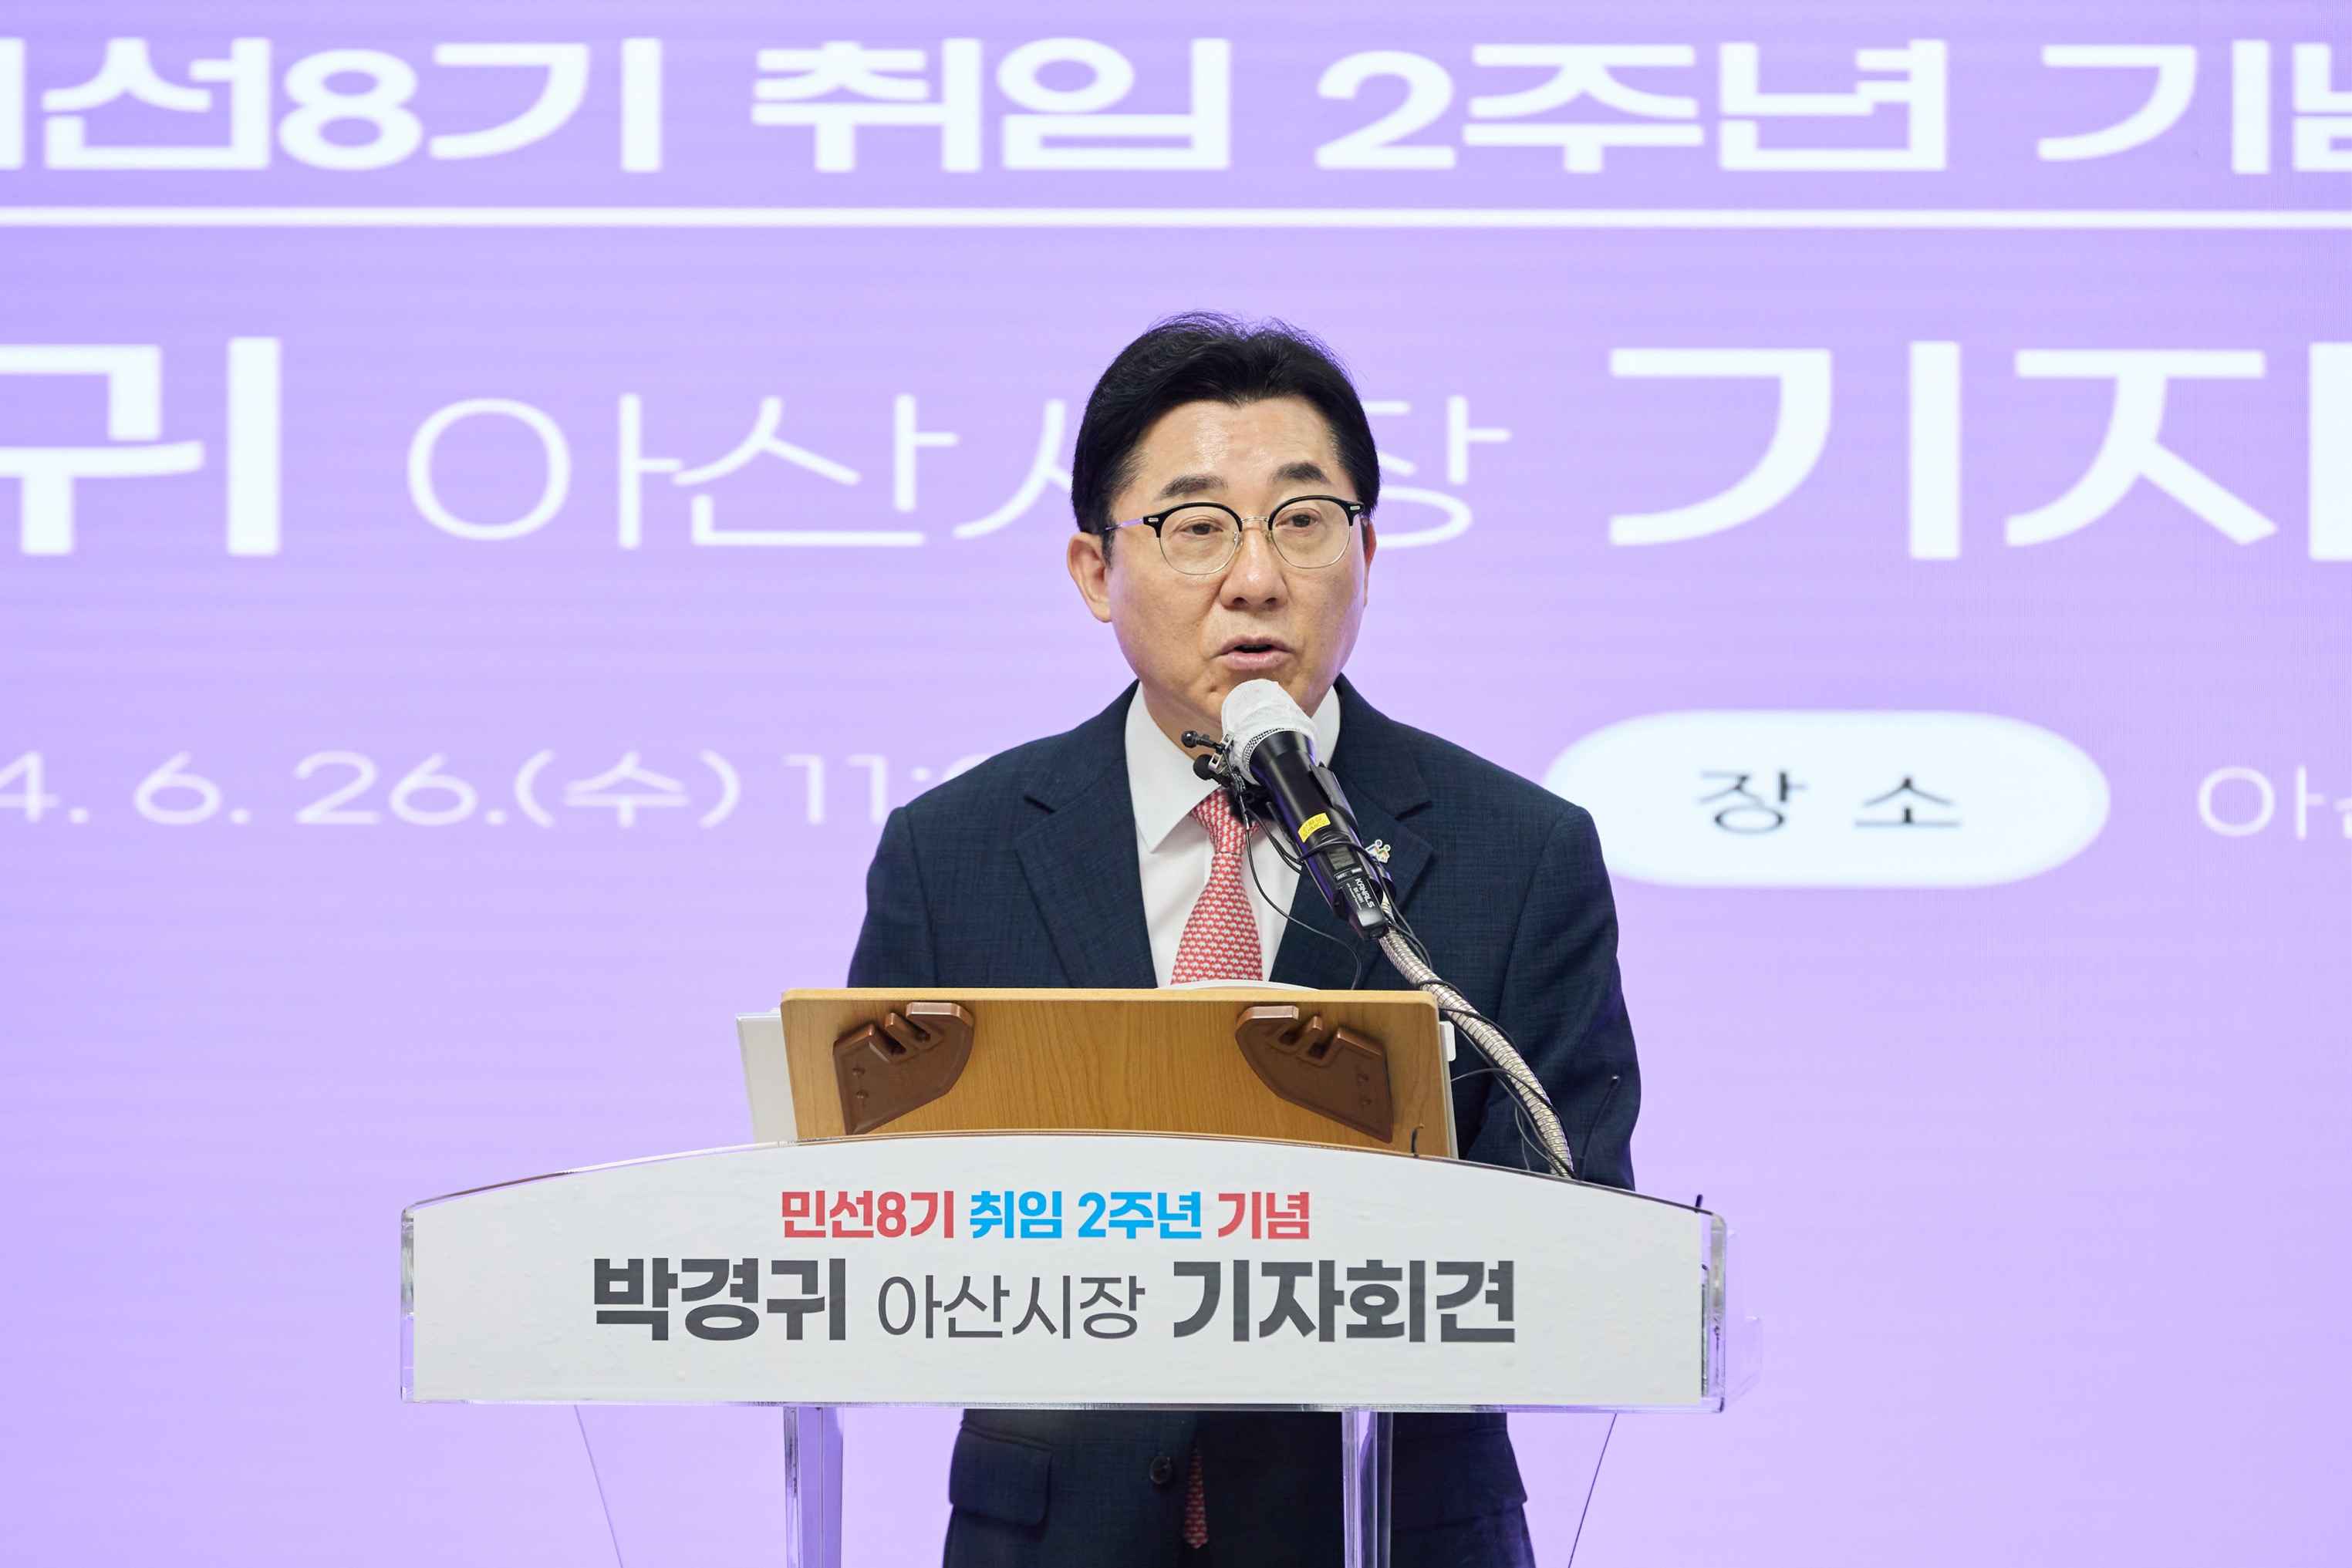 박경귀 아산시장 “민선 8기 도시브랜드 수직 상승... 성과에 안주하지 않겠다”  관련사진